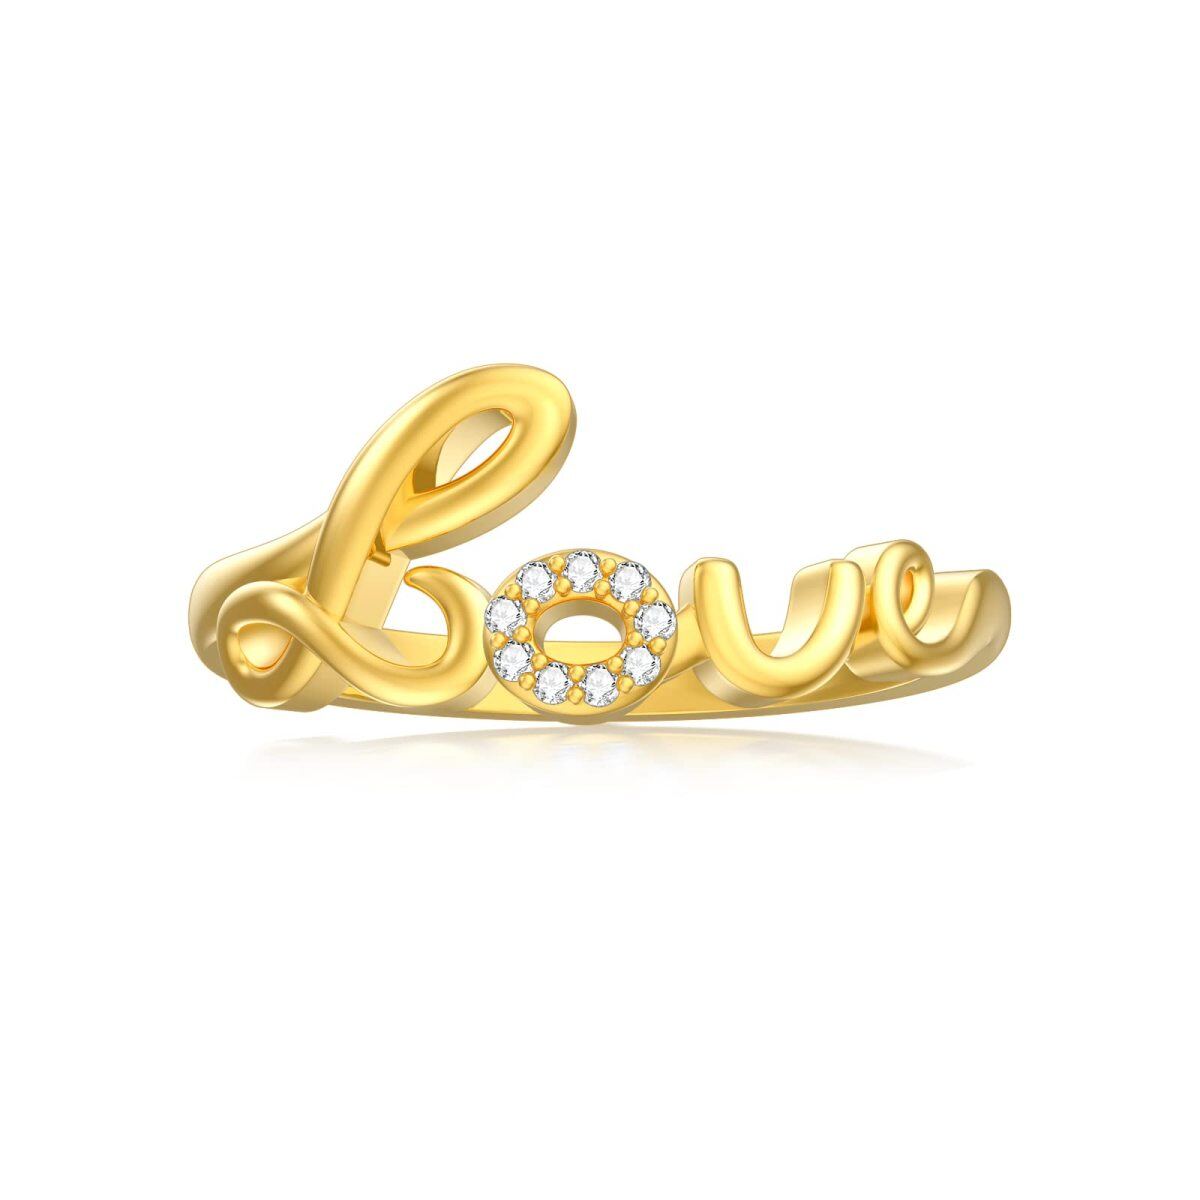 Anillo de oro de 14 quilates en forma circular con diamantes y una palabra grabada-1